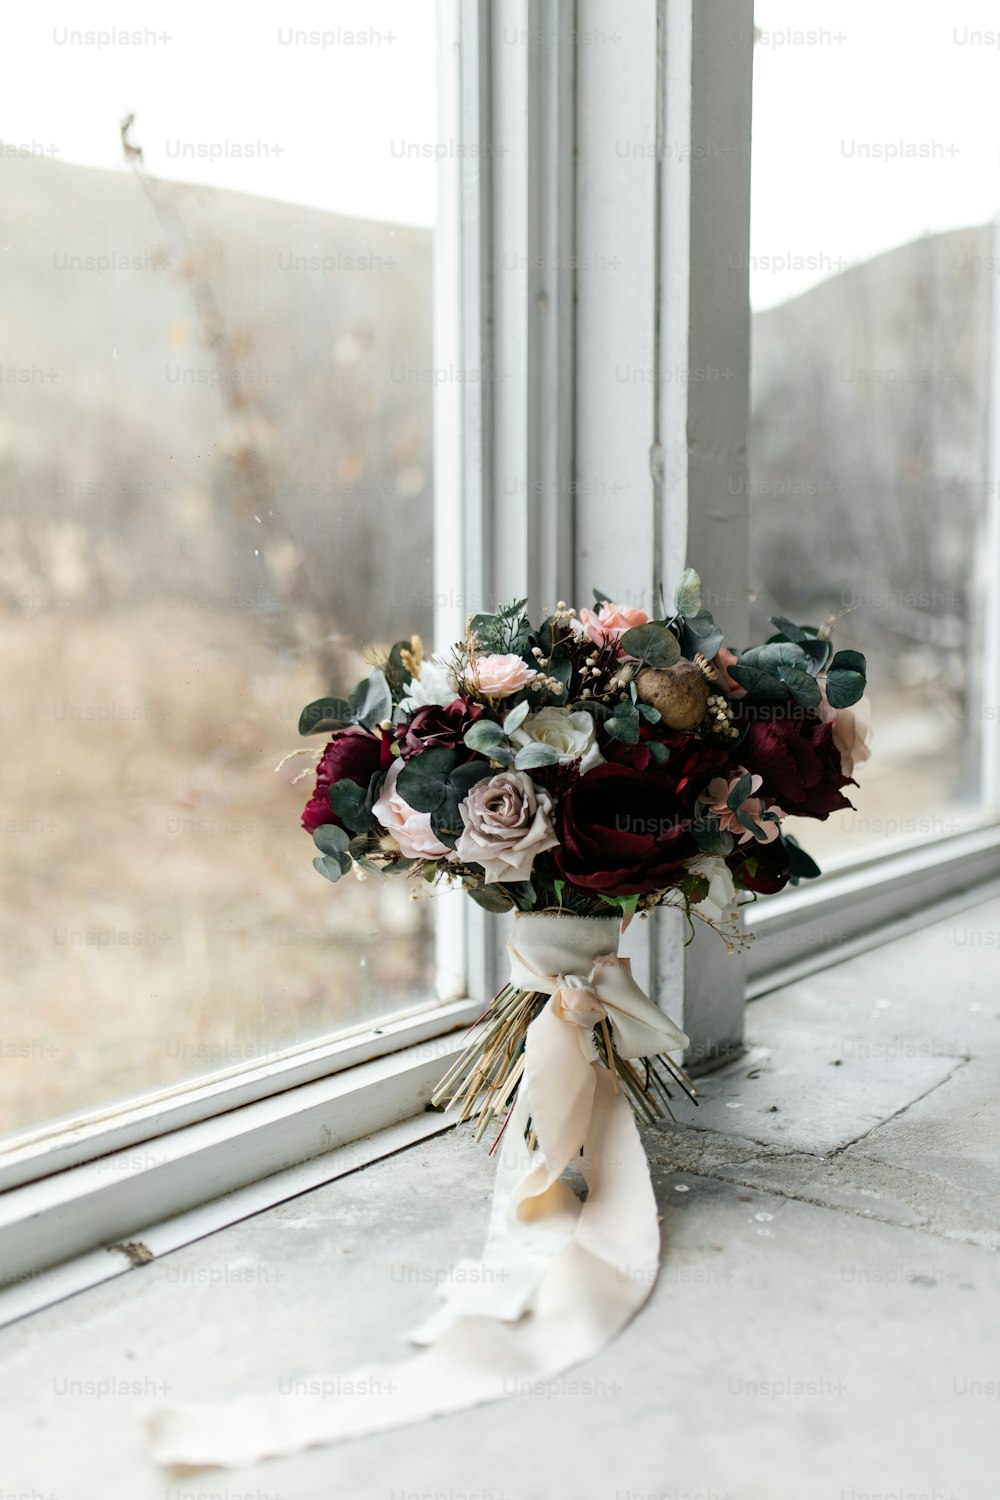 un bouquet de fleurs posé sur un rebord de fenêtre